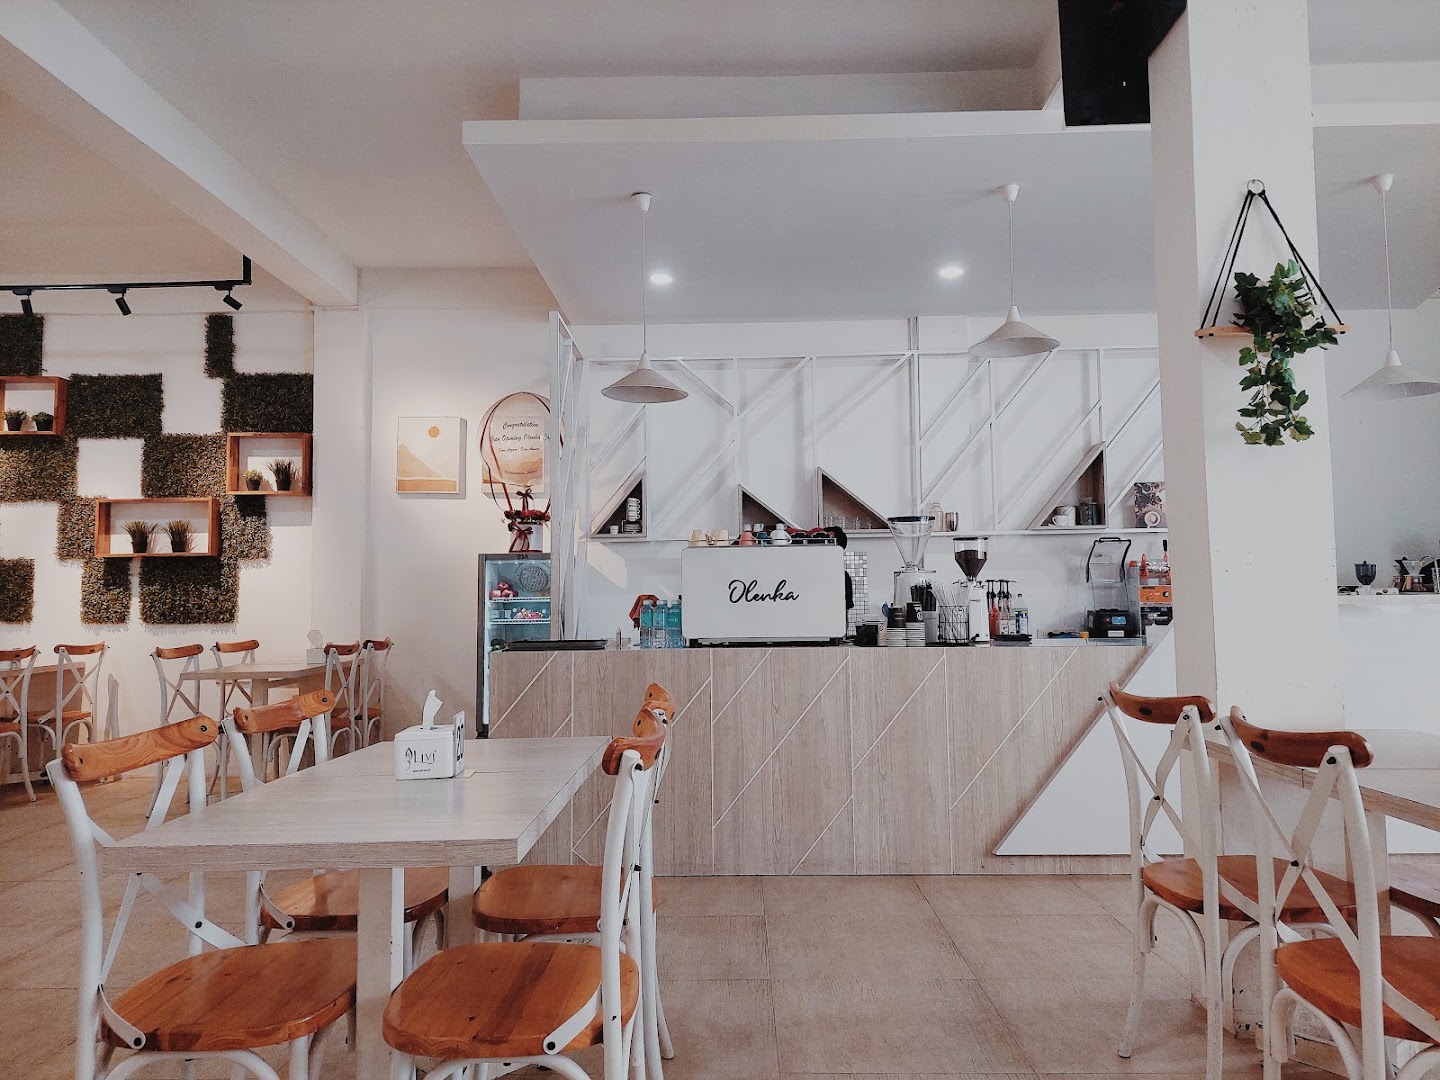 Olenka Cafe: Harga Tiket, Foto, Lokasi, Fasilitas dan Spot